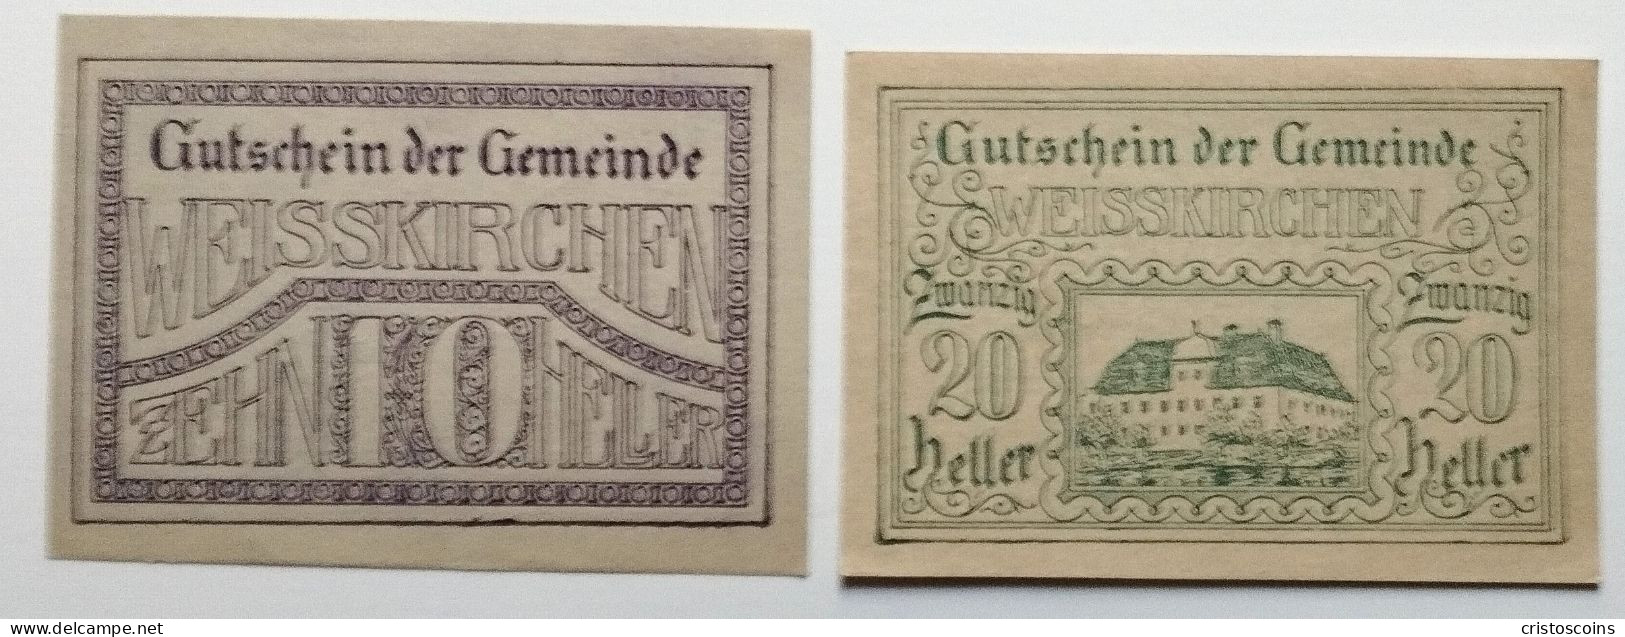 Austria 10/20H Notgeld  Weisskirchen 1920 (Ban.2023 - Oesterreich